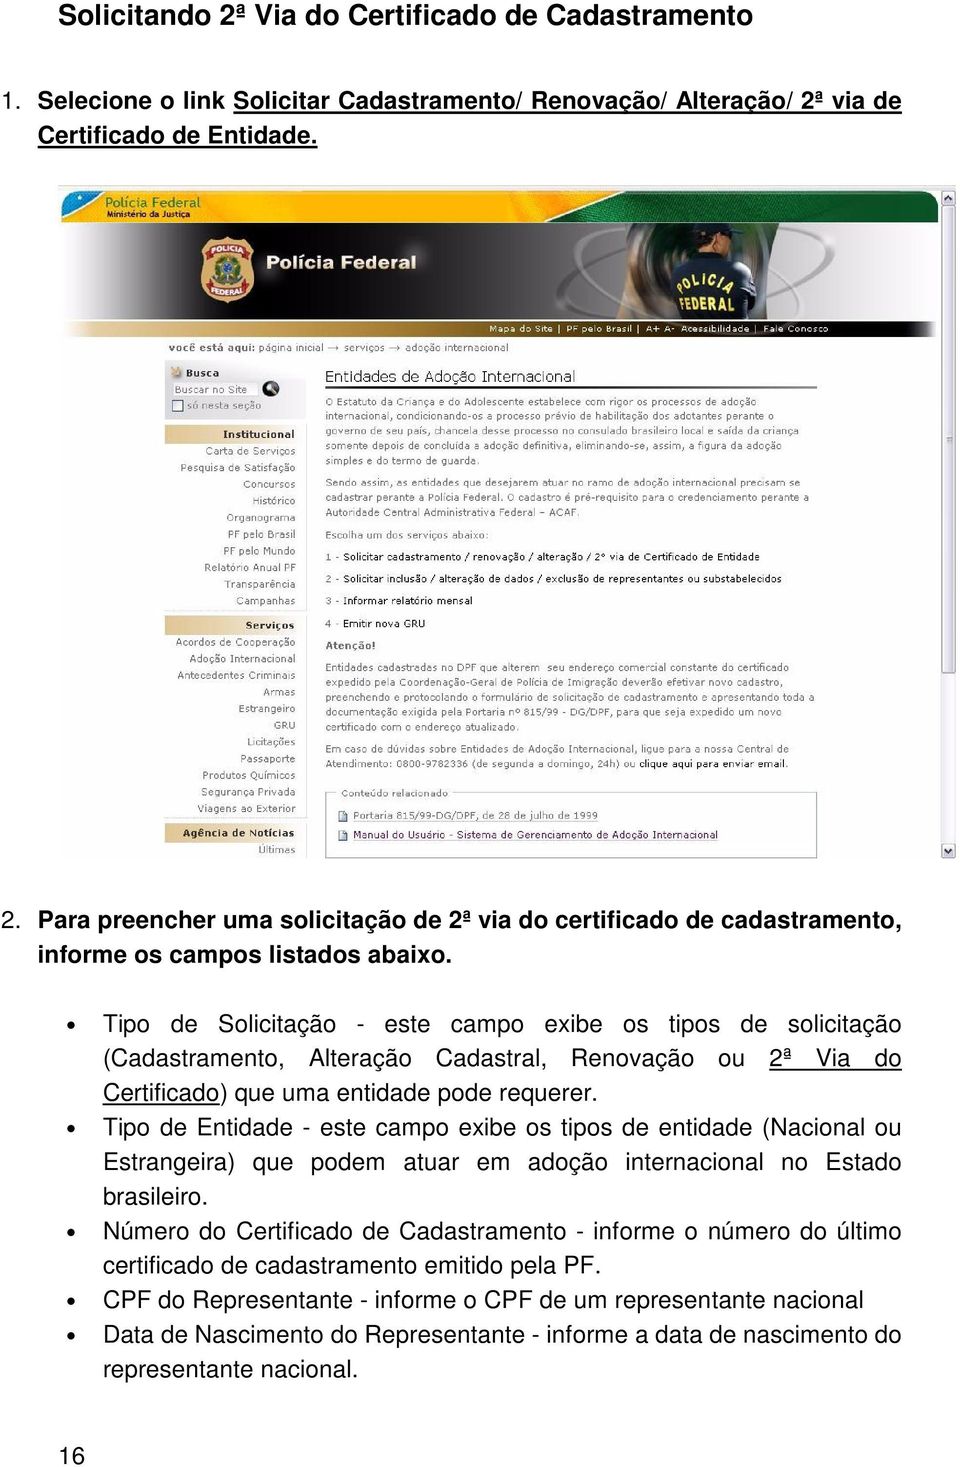 Tipo de Entidade - este campo exibe os tipos de entidade (Nacional ou Estrangeira) que podem atuar em adoção internacional no Estado brasileiro.